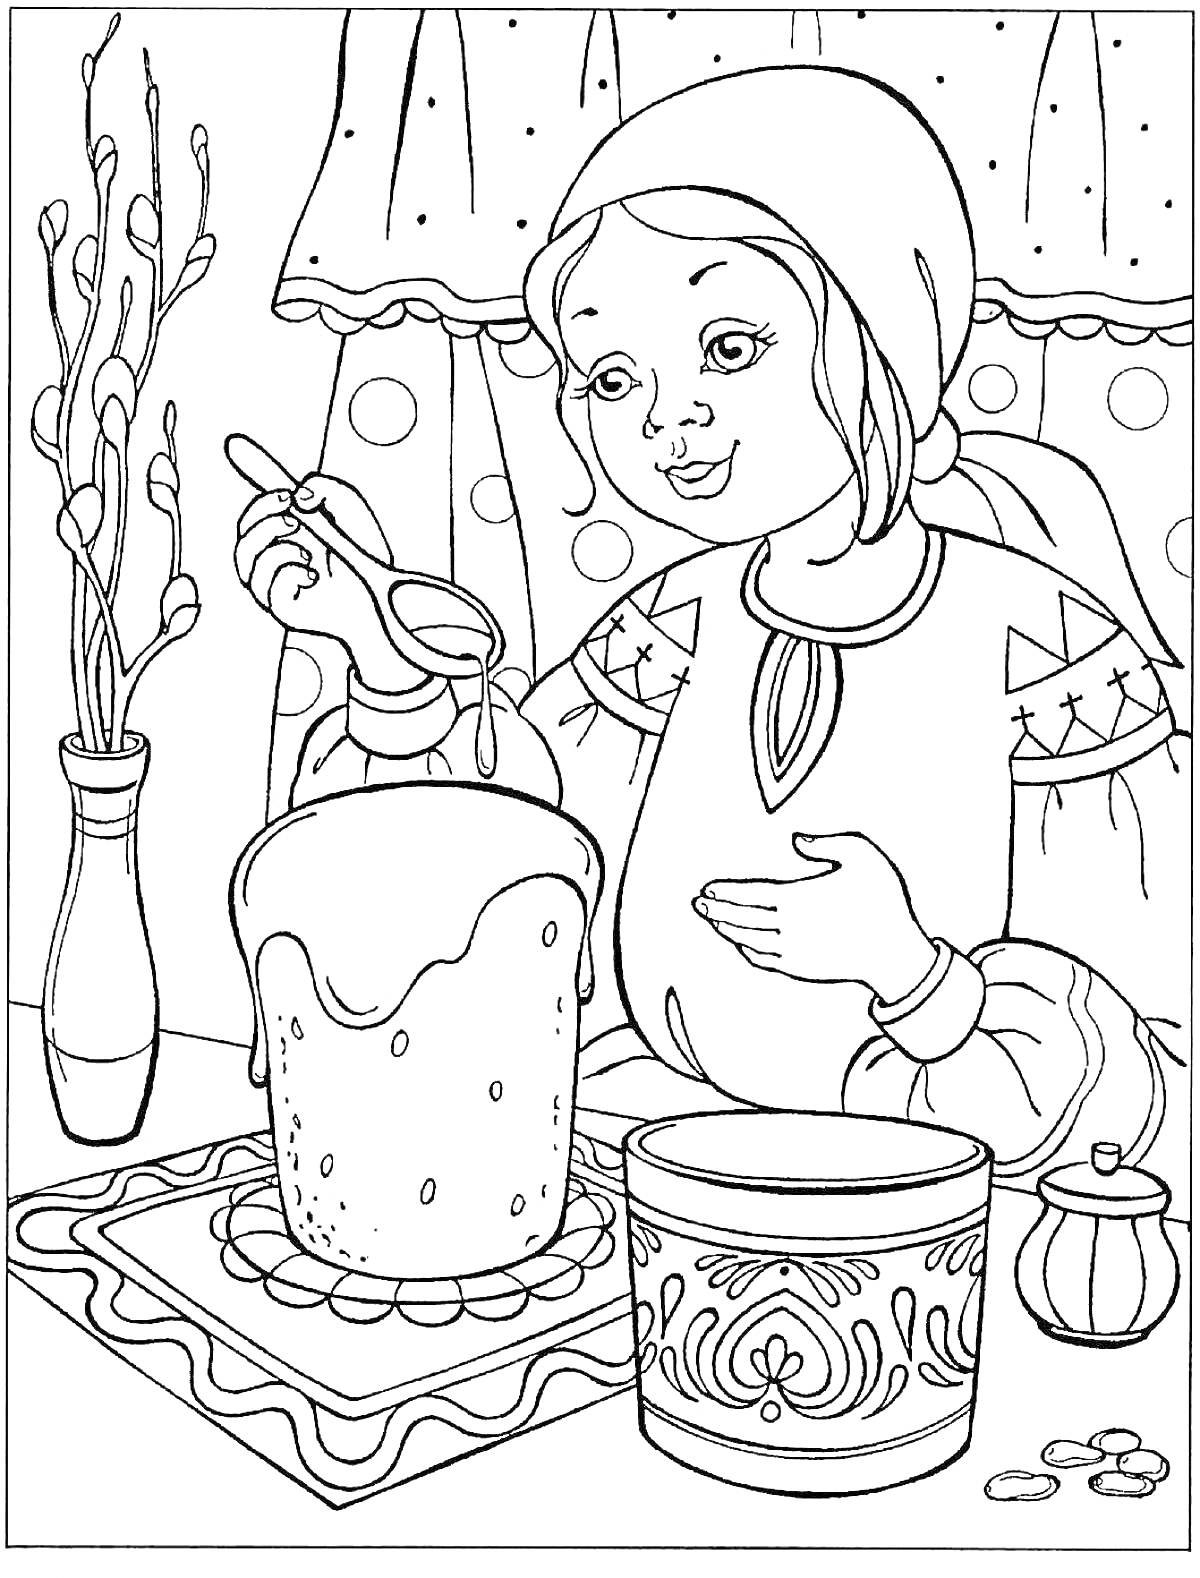 Раскраска Девочка украшает кулич в доме на Пасху, ваза с вербой, расписанная банка и солонка